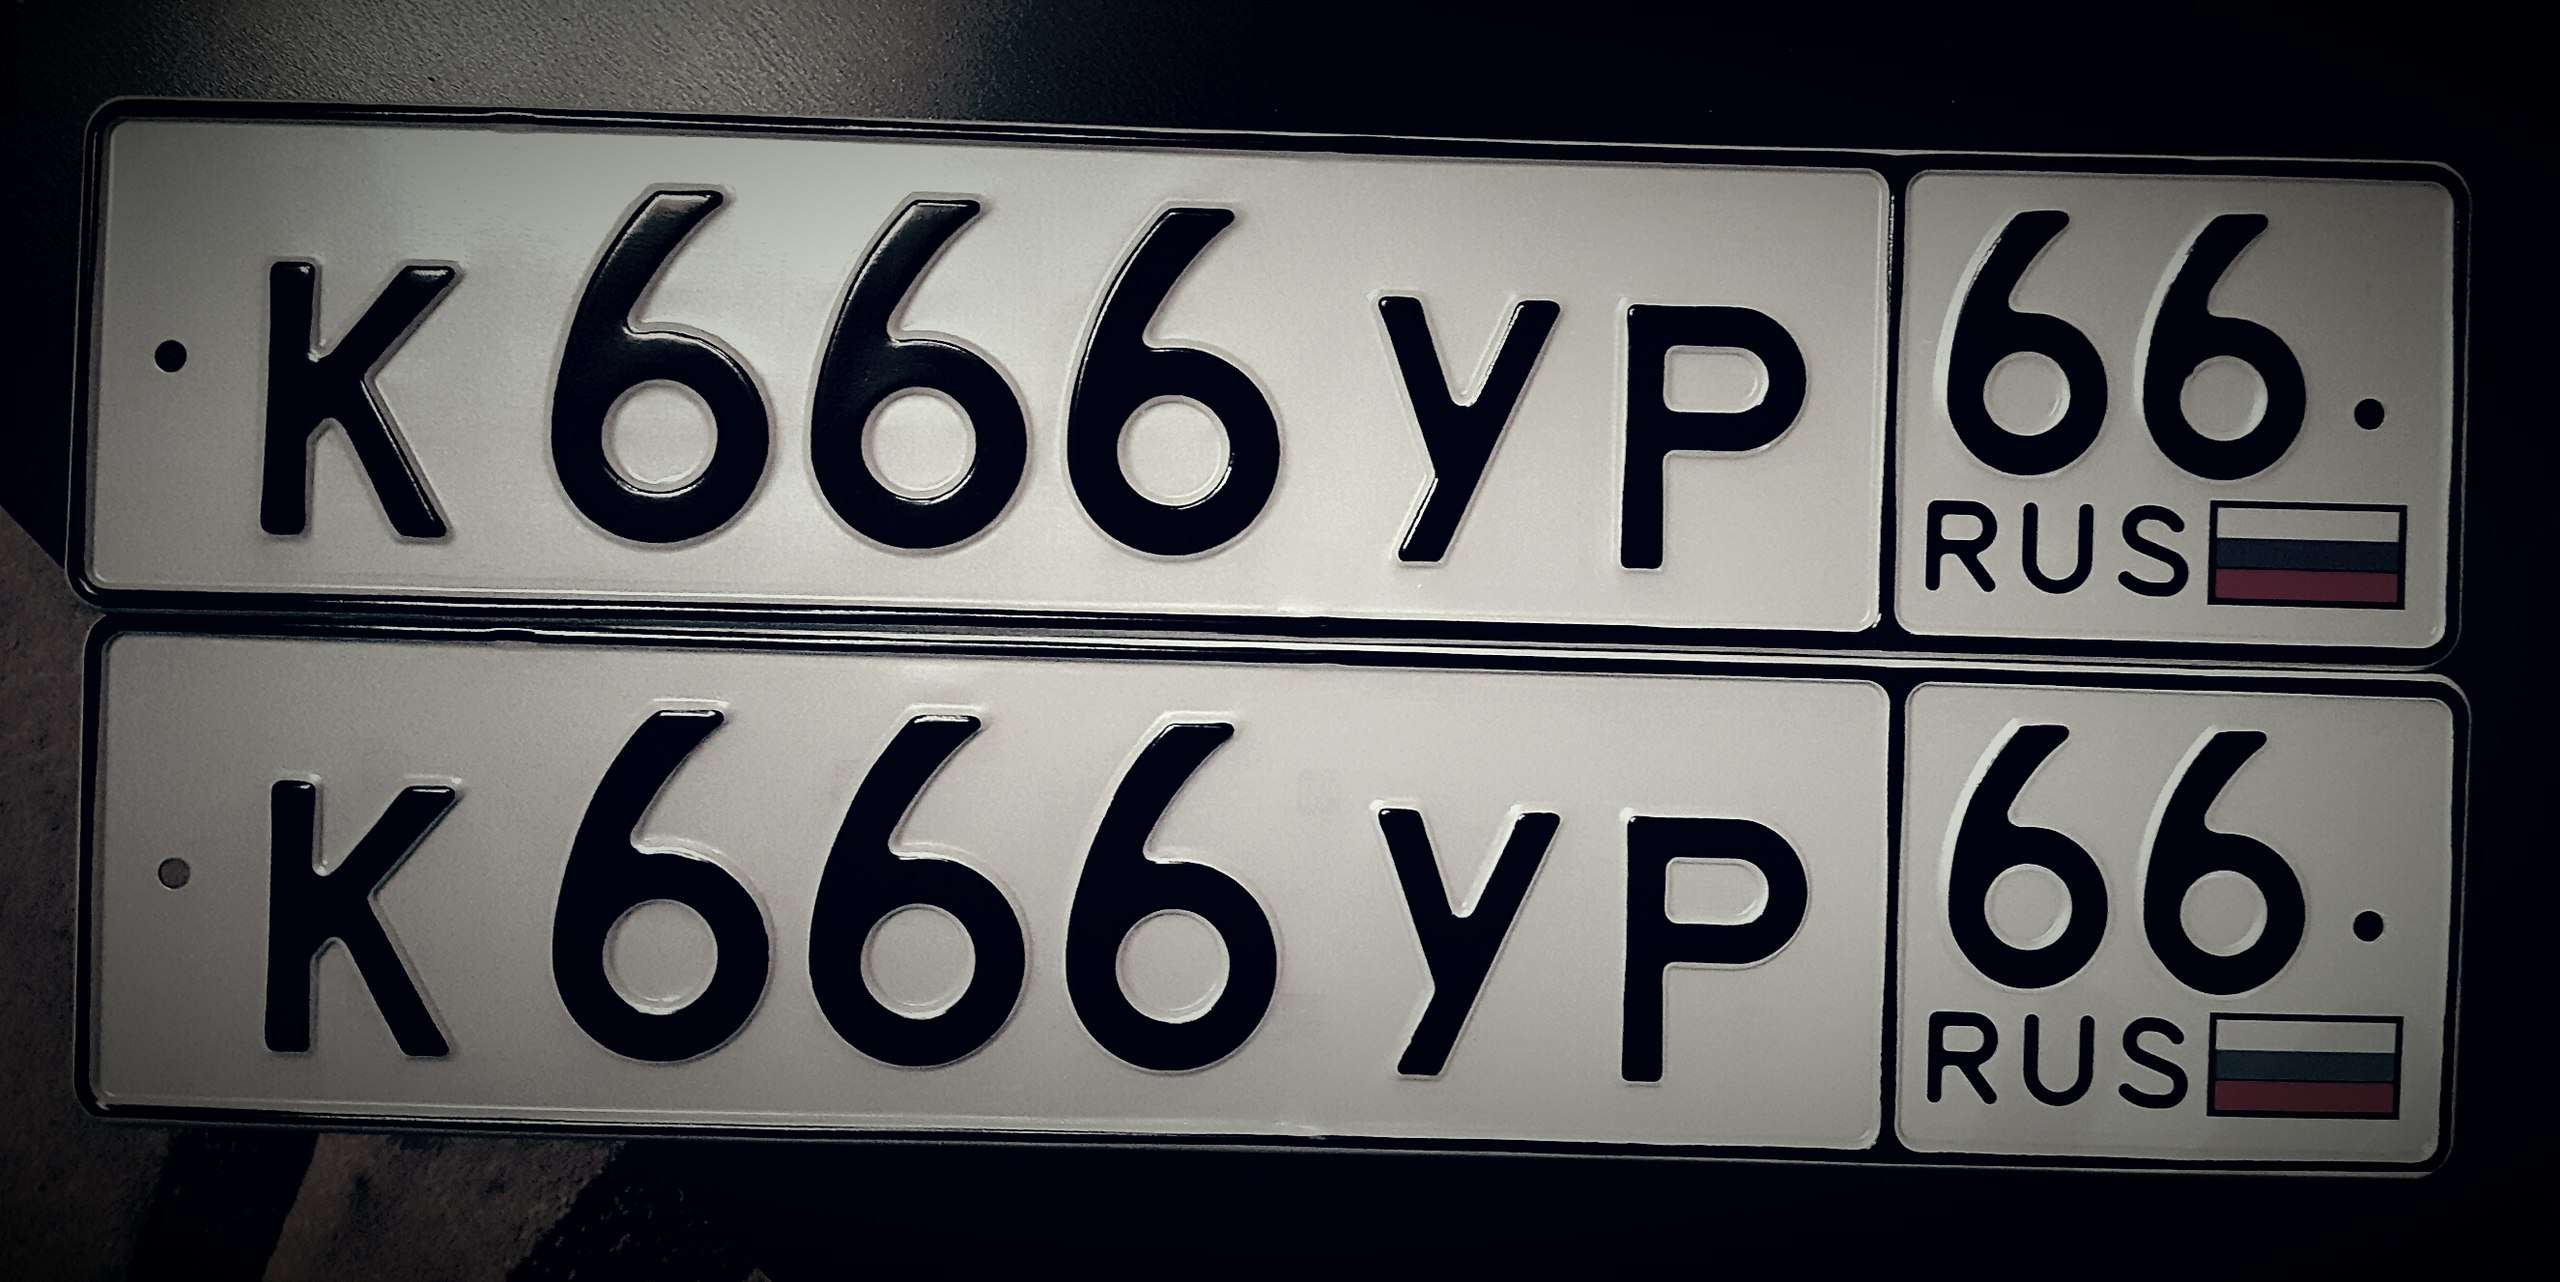 Чарах номер. Номера машин. Государственный номерной знак. Автомобильный номерной знак. Номерной знак 666.